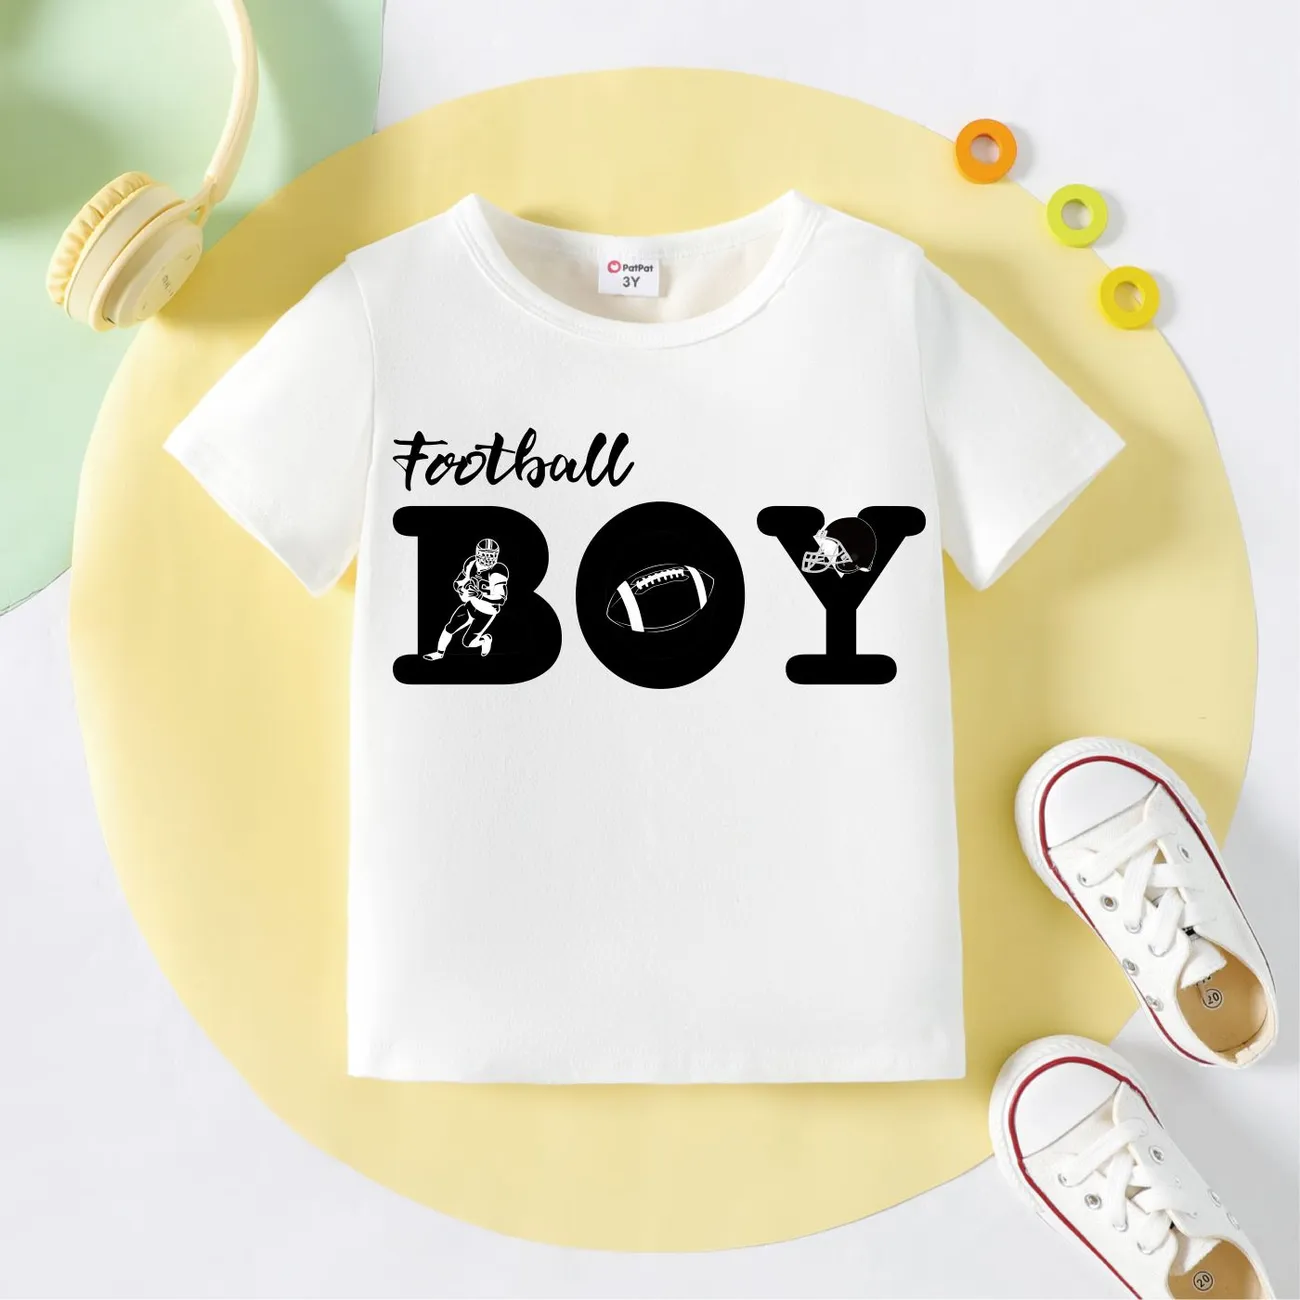 Kleinkinder Jungen Lässig Kurzärmelig T-Shirts weiß big image 1